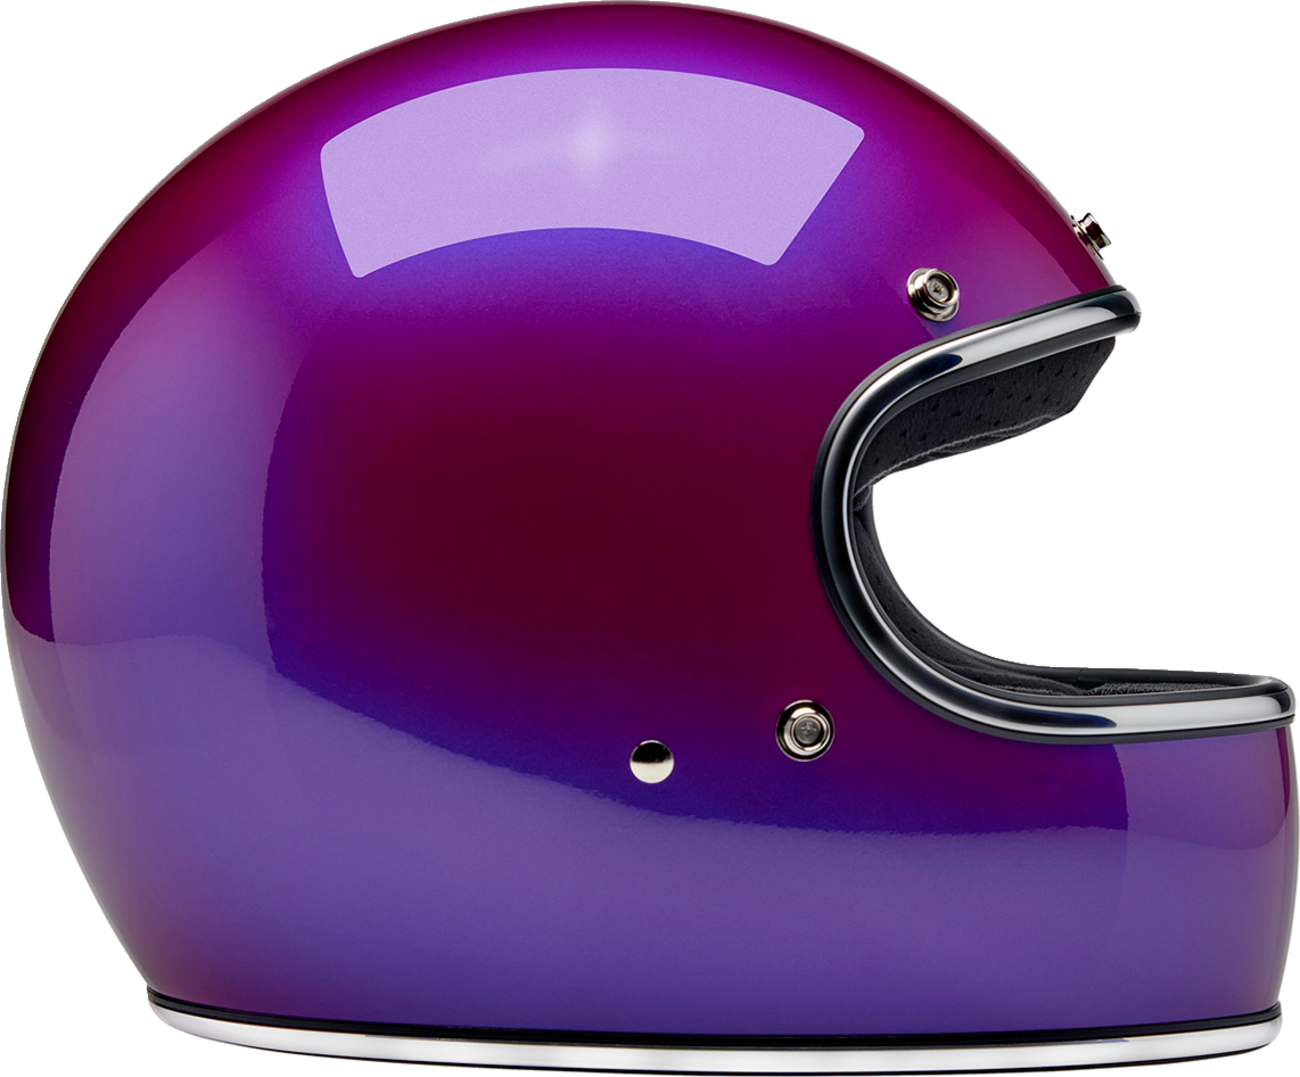 BILTWELL Gringo Helmet - Metallic Grape - XS 1002-339-501